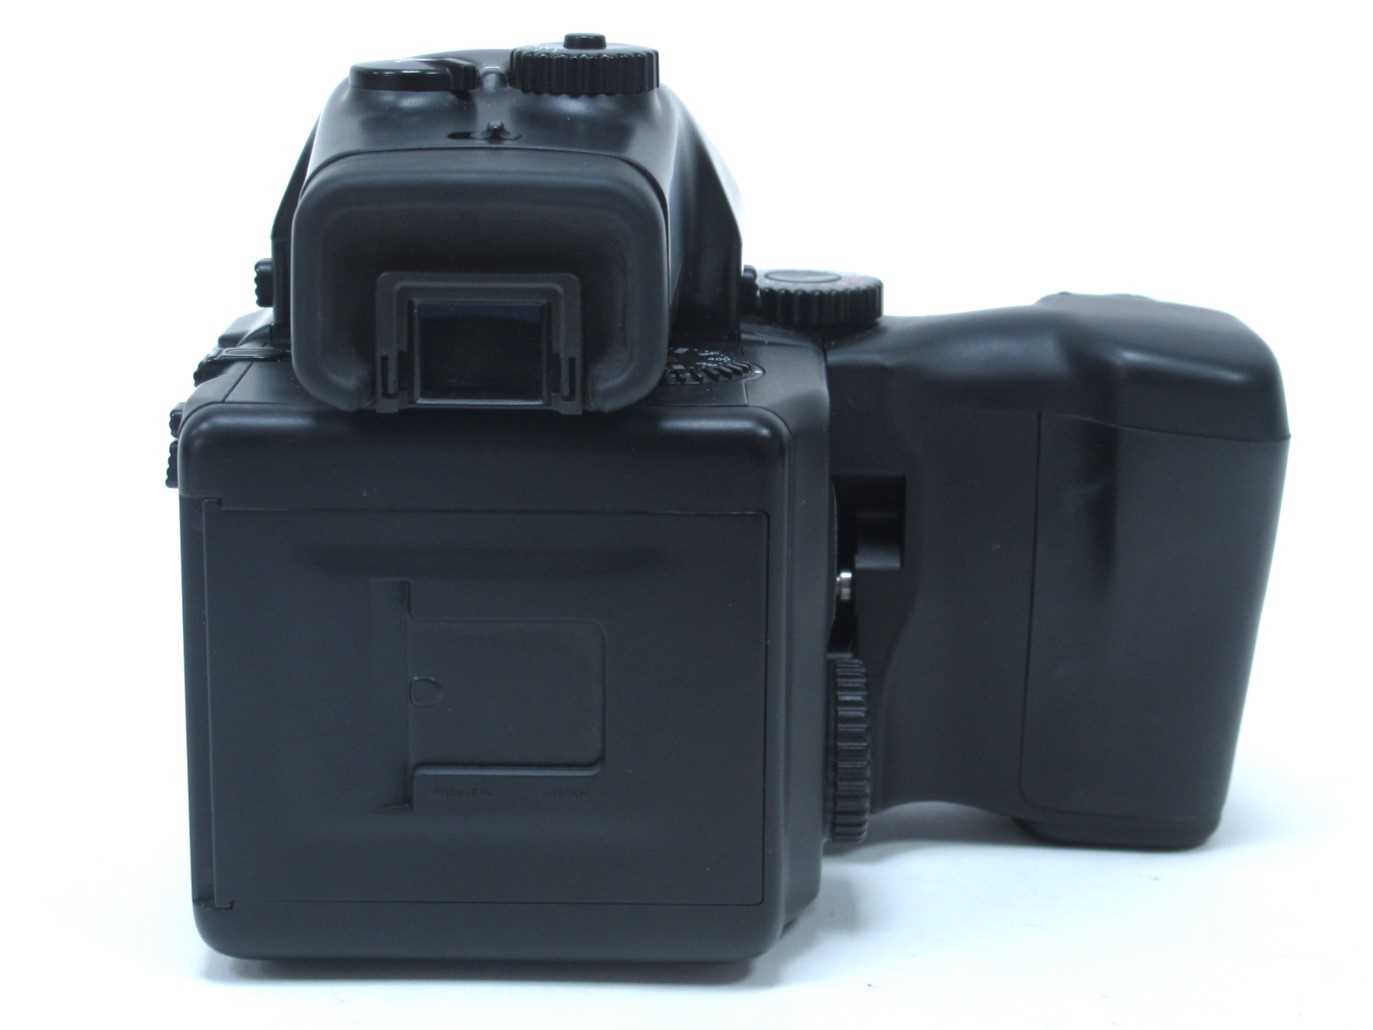 Mamiya 645 Pro Camera, having Mamiya - Sekor 80mm lens 1:2.8, extra 150mm 1:3.5 and 55mm 1:2.8 - Image 6 of 10